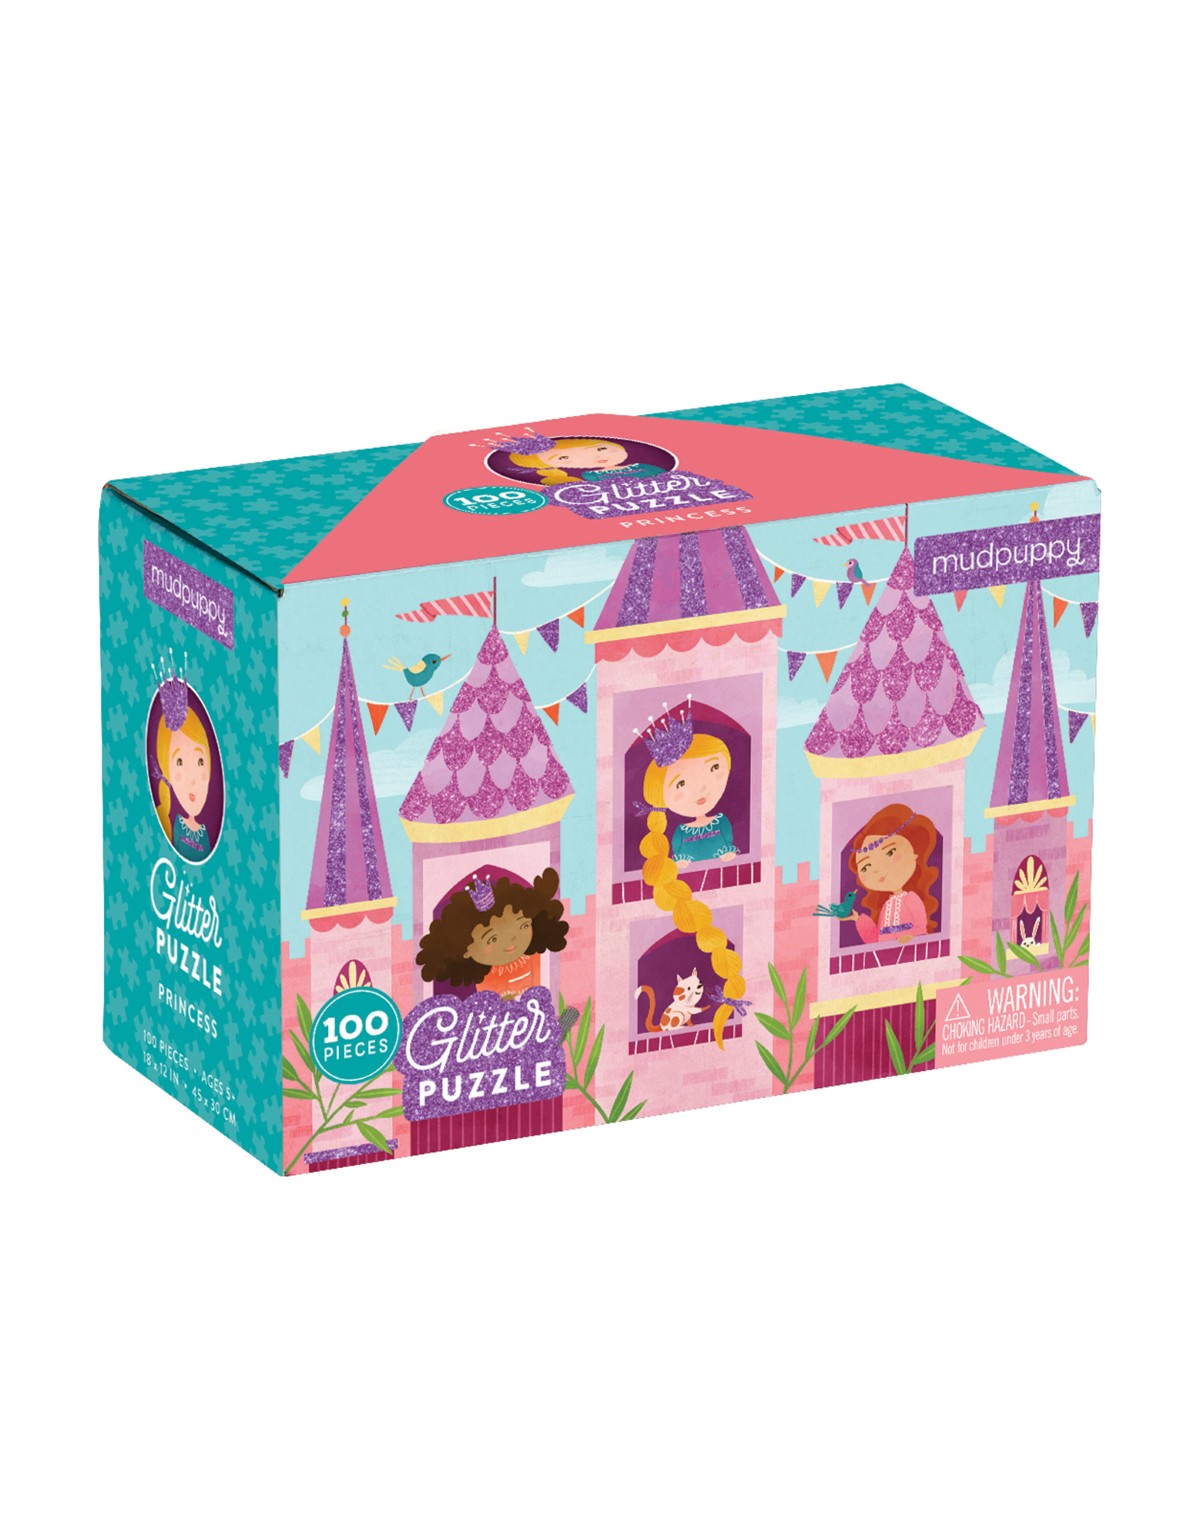 Mudpuppy Princess Glitter Puzzle